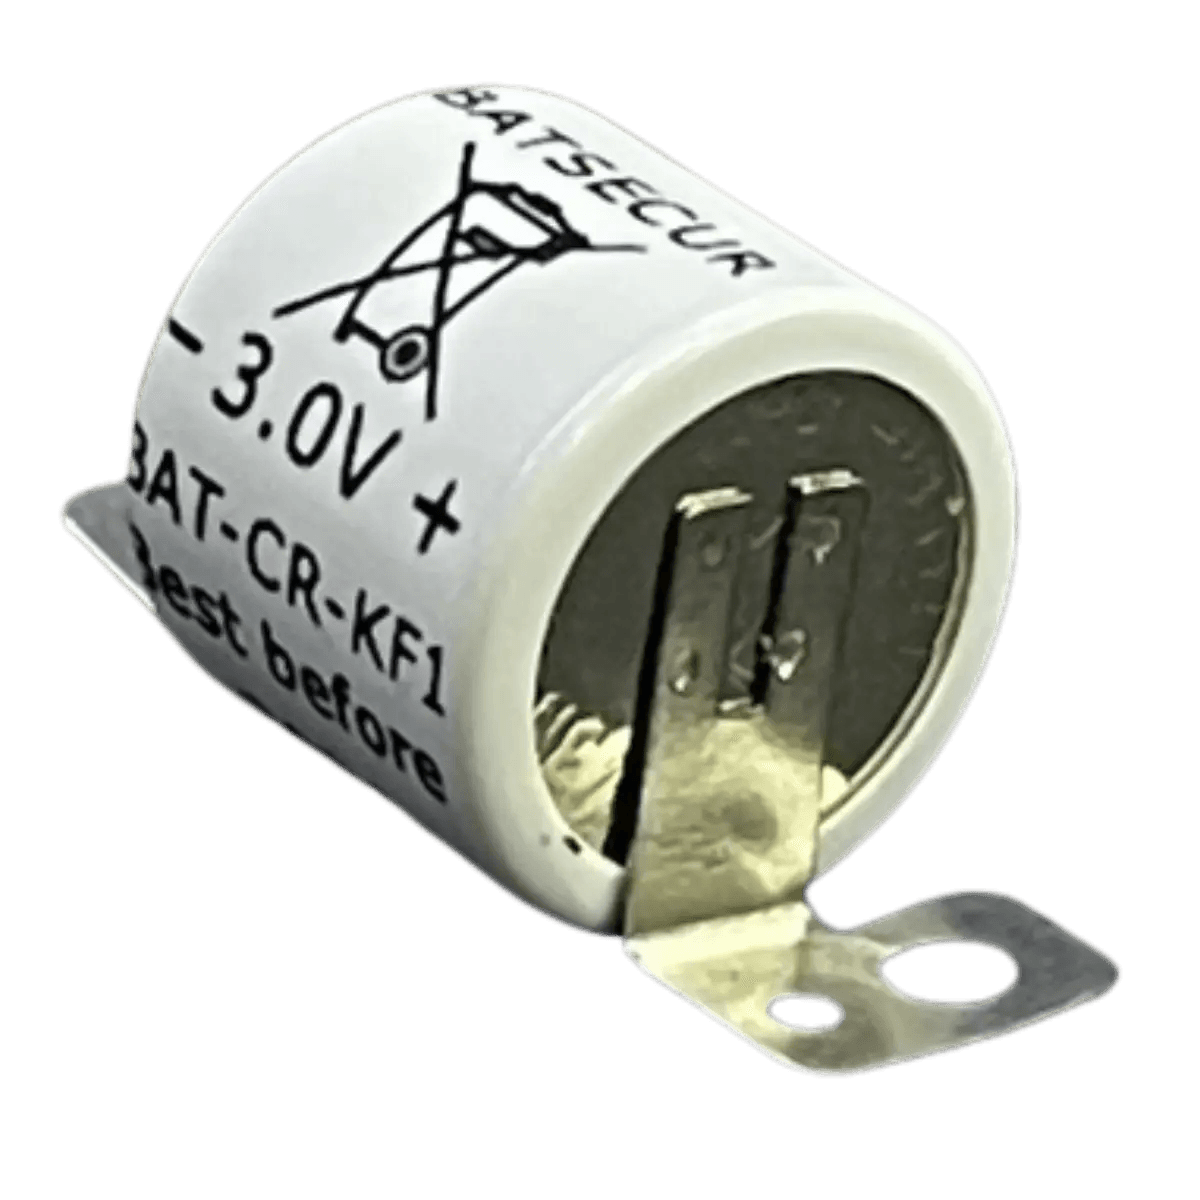 Batterie BATT-CR/KF1 pour alarme de sécurité Pyronix 